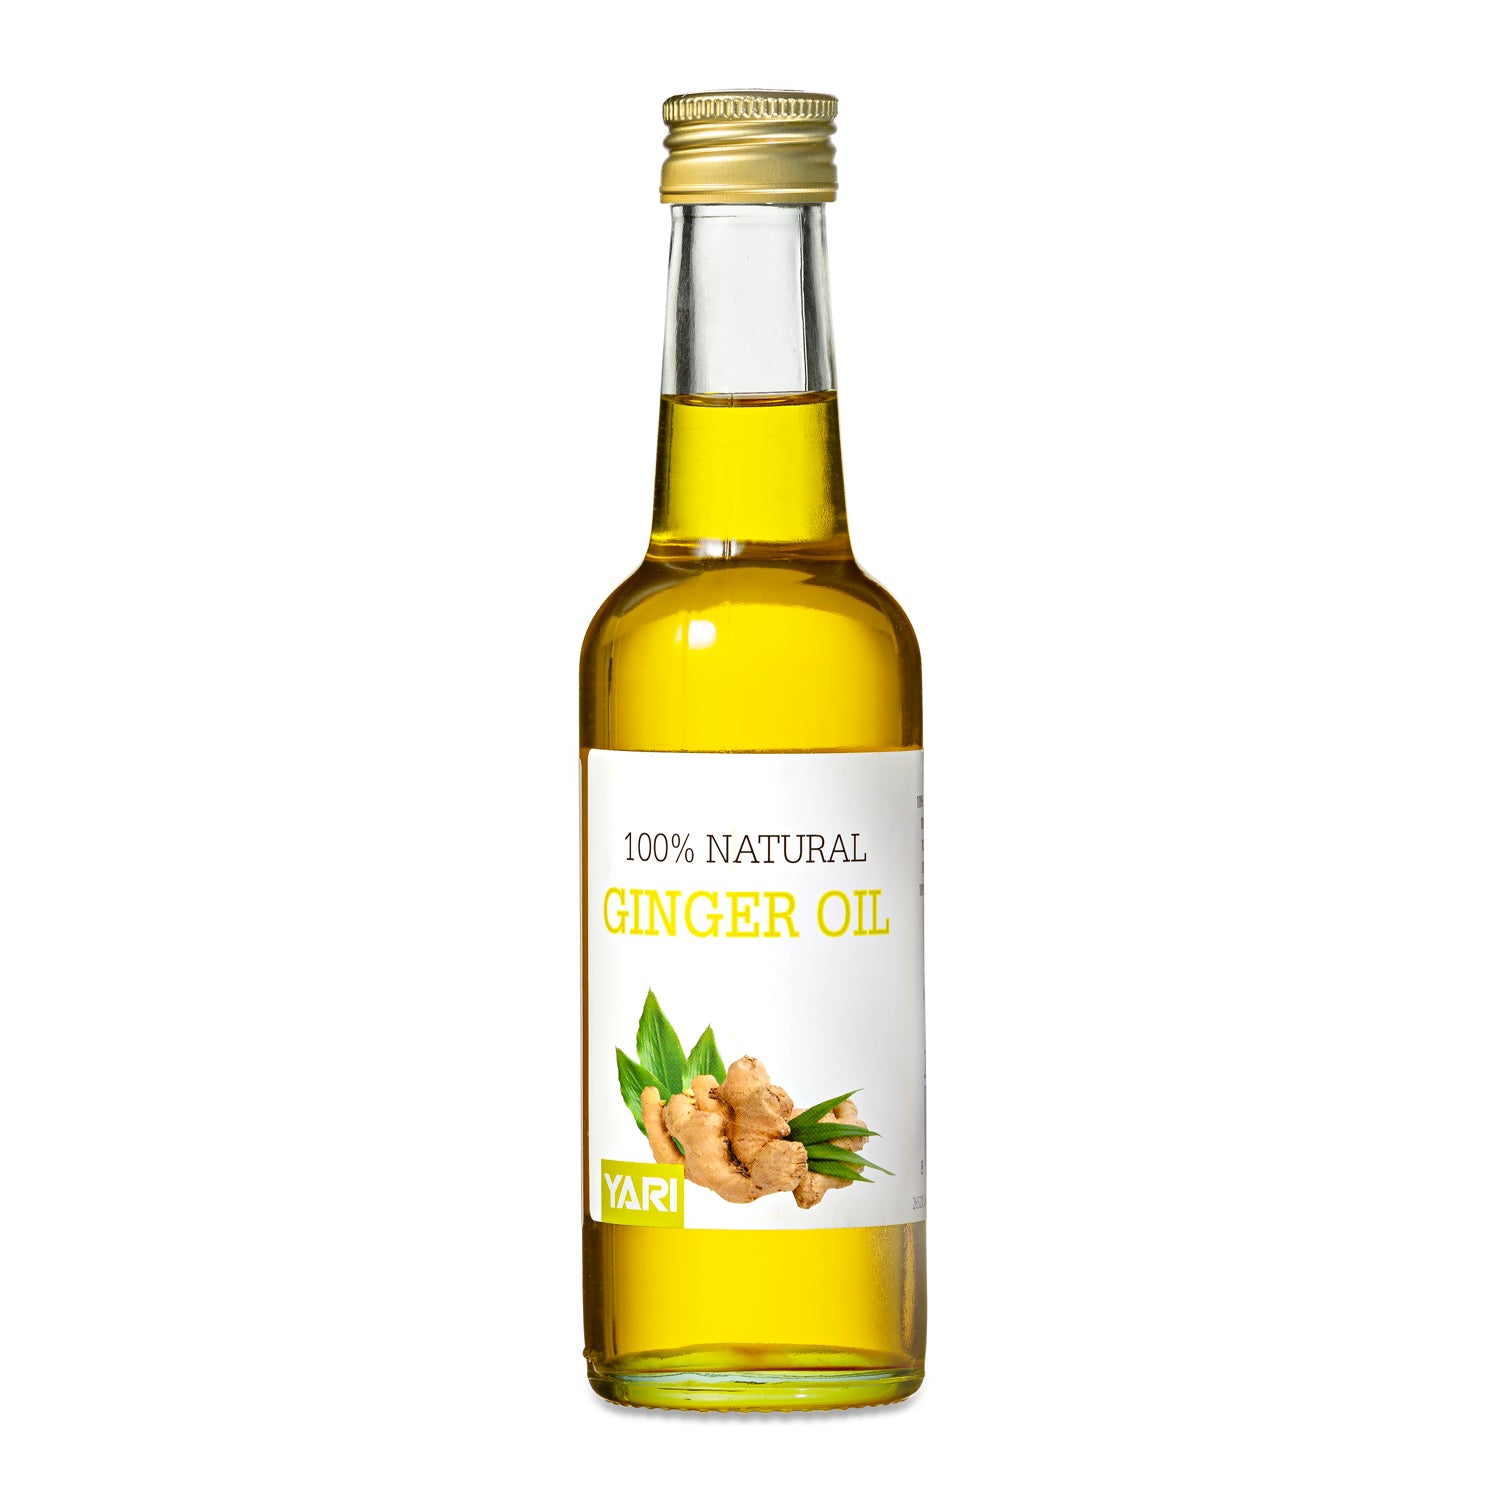 Yari - 100% Natural Ginger Oil 250ml